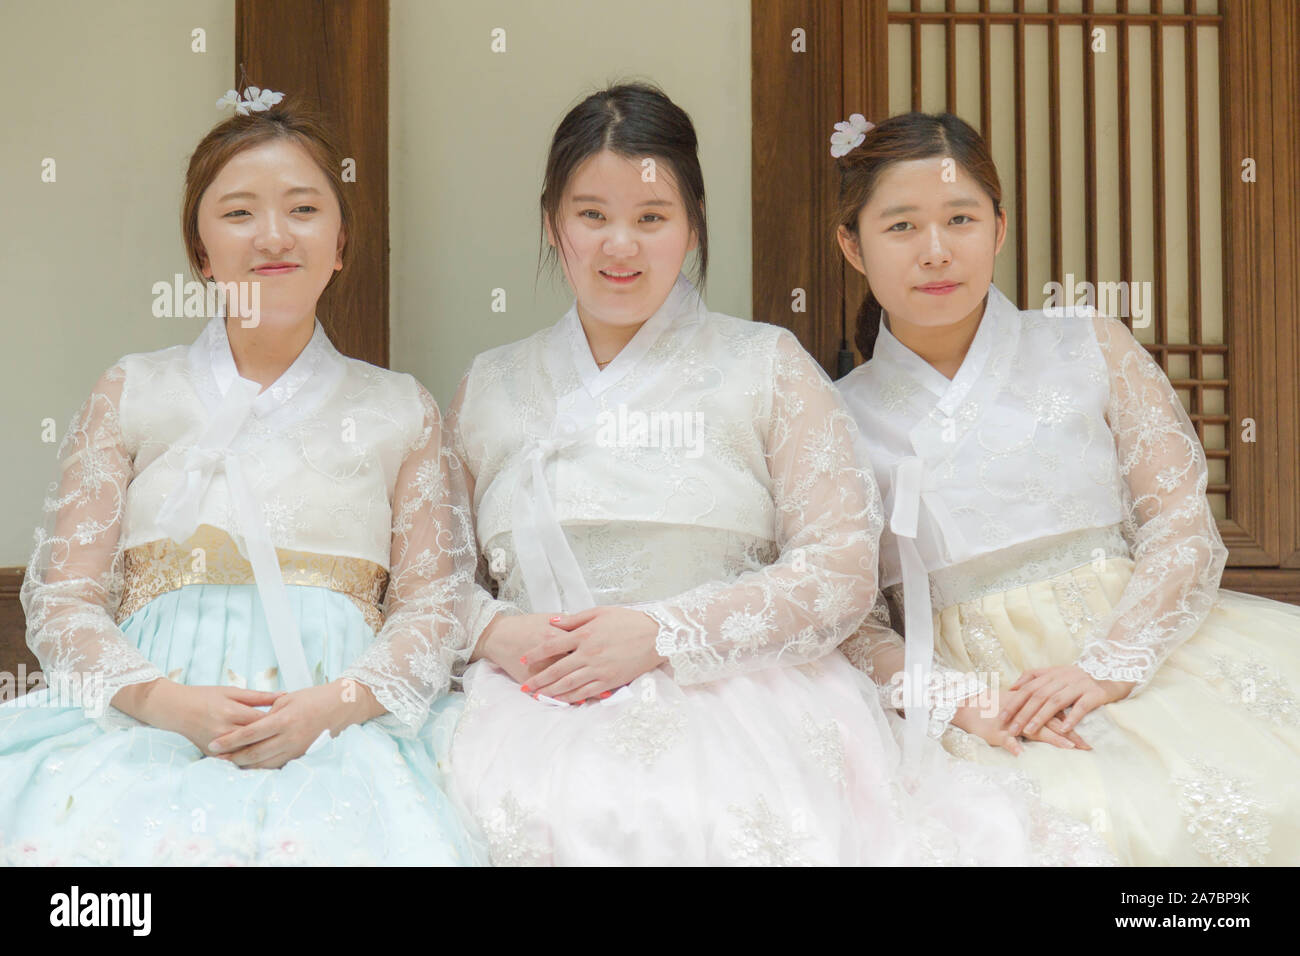 Das Dorf Bukchon Hanok, Seoul, Südkorea. Ein Porträt von drei jungen koreanischen Frauen im traditionellen Outfit. Stockfoto